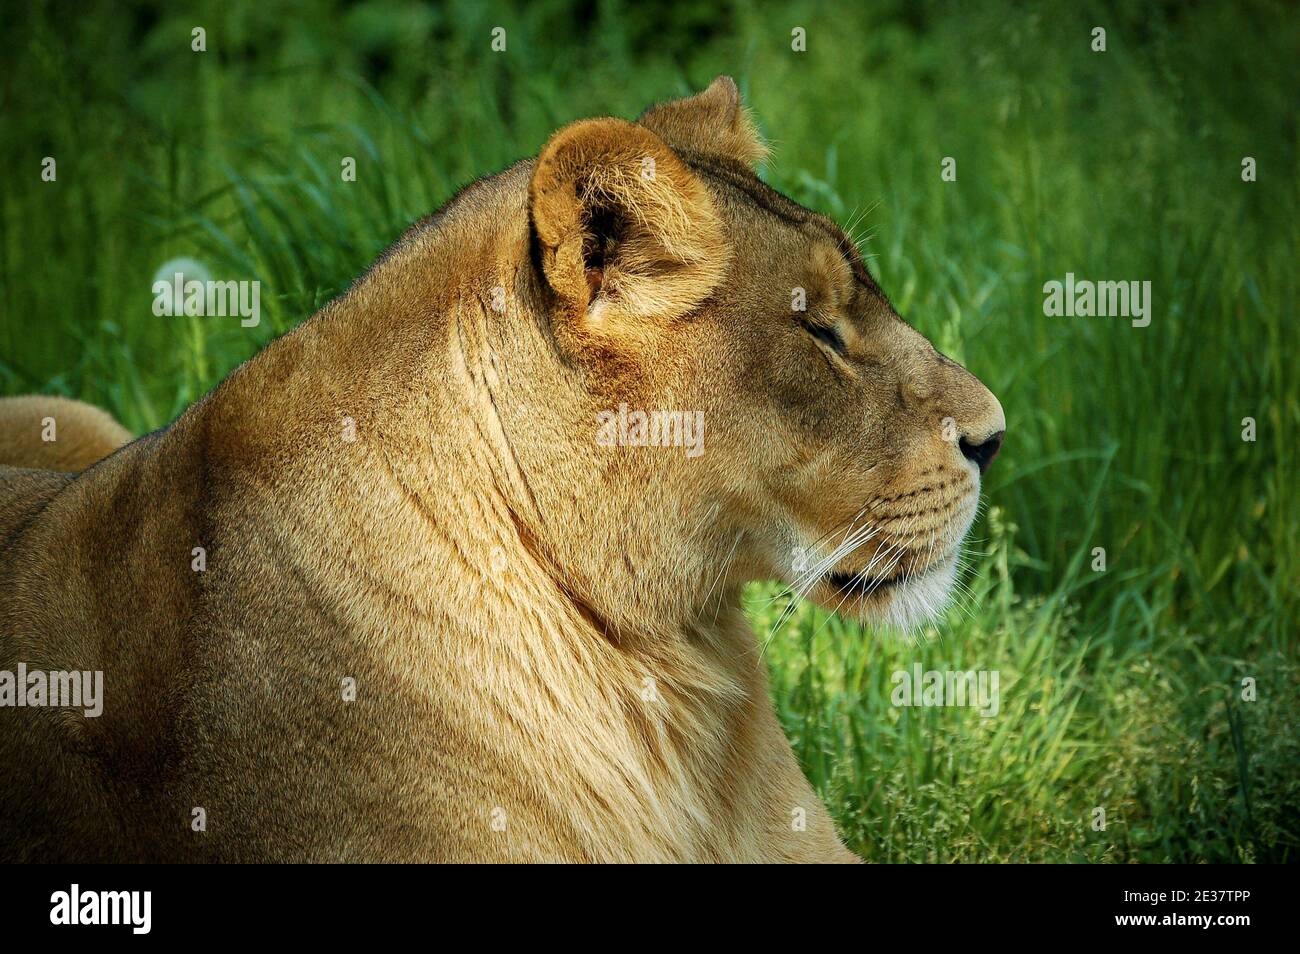 Primo piano di una leonessa che riposa nell'erba verde, vista laterale Foto Stock